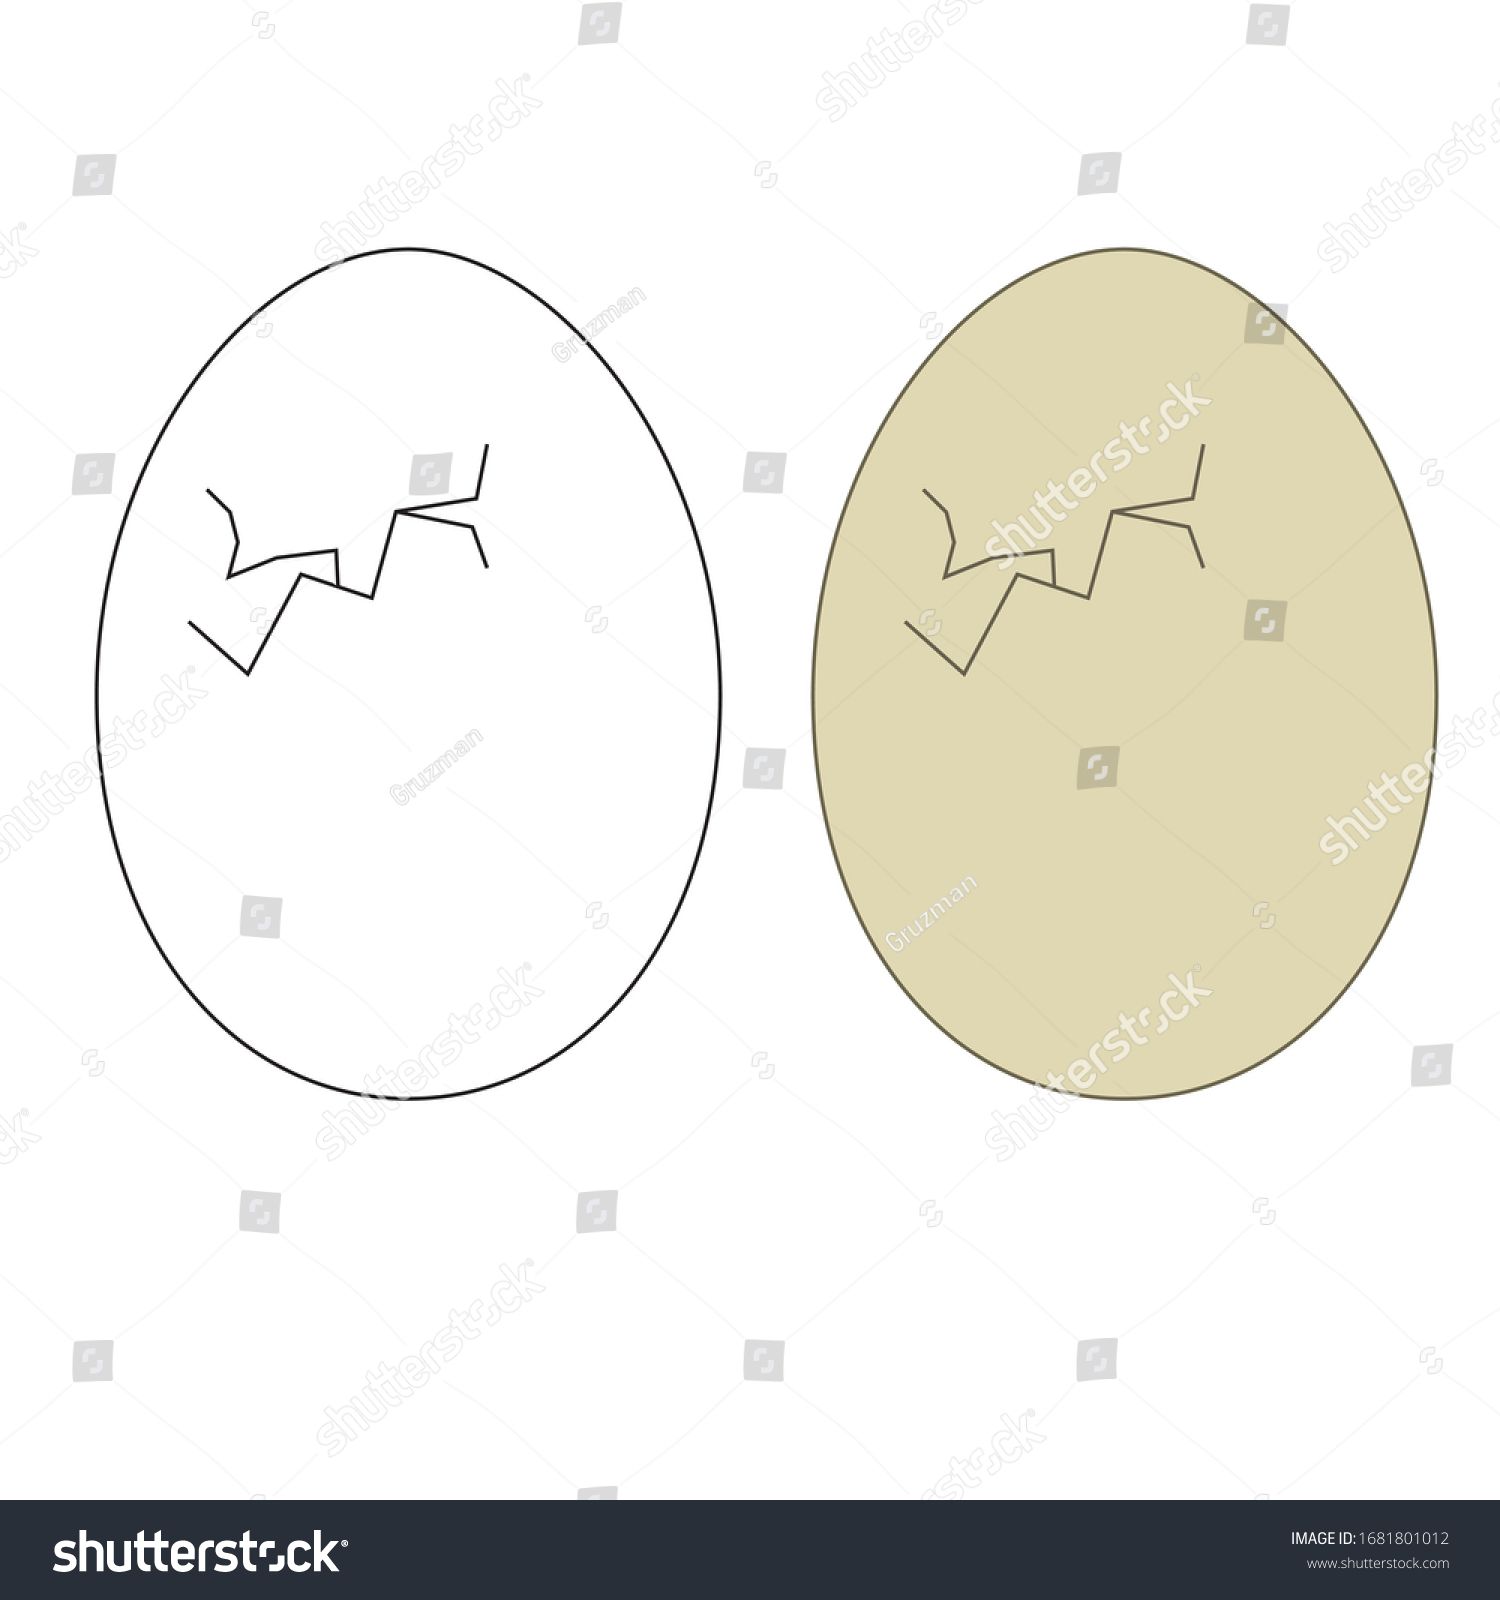 ביצה וקטורי-1681801012.jpg